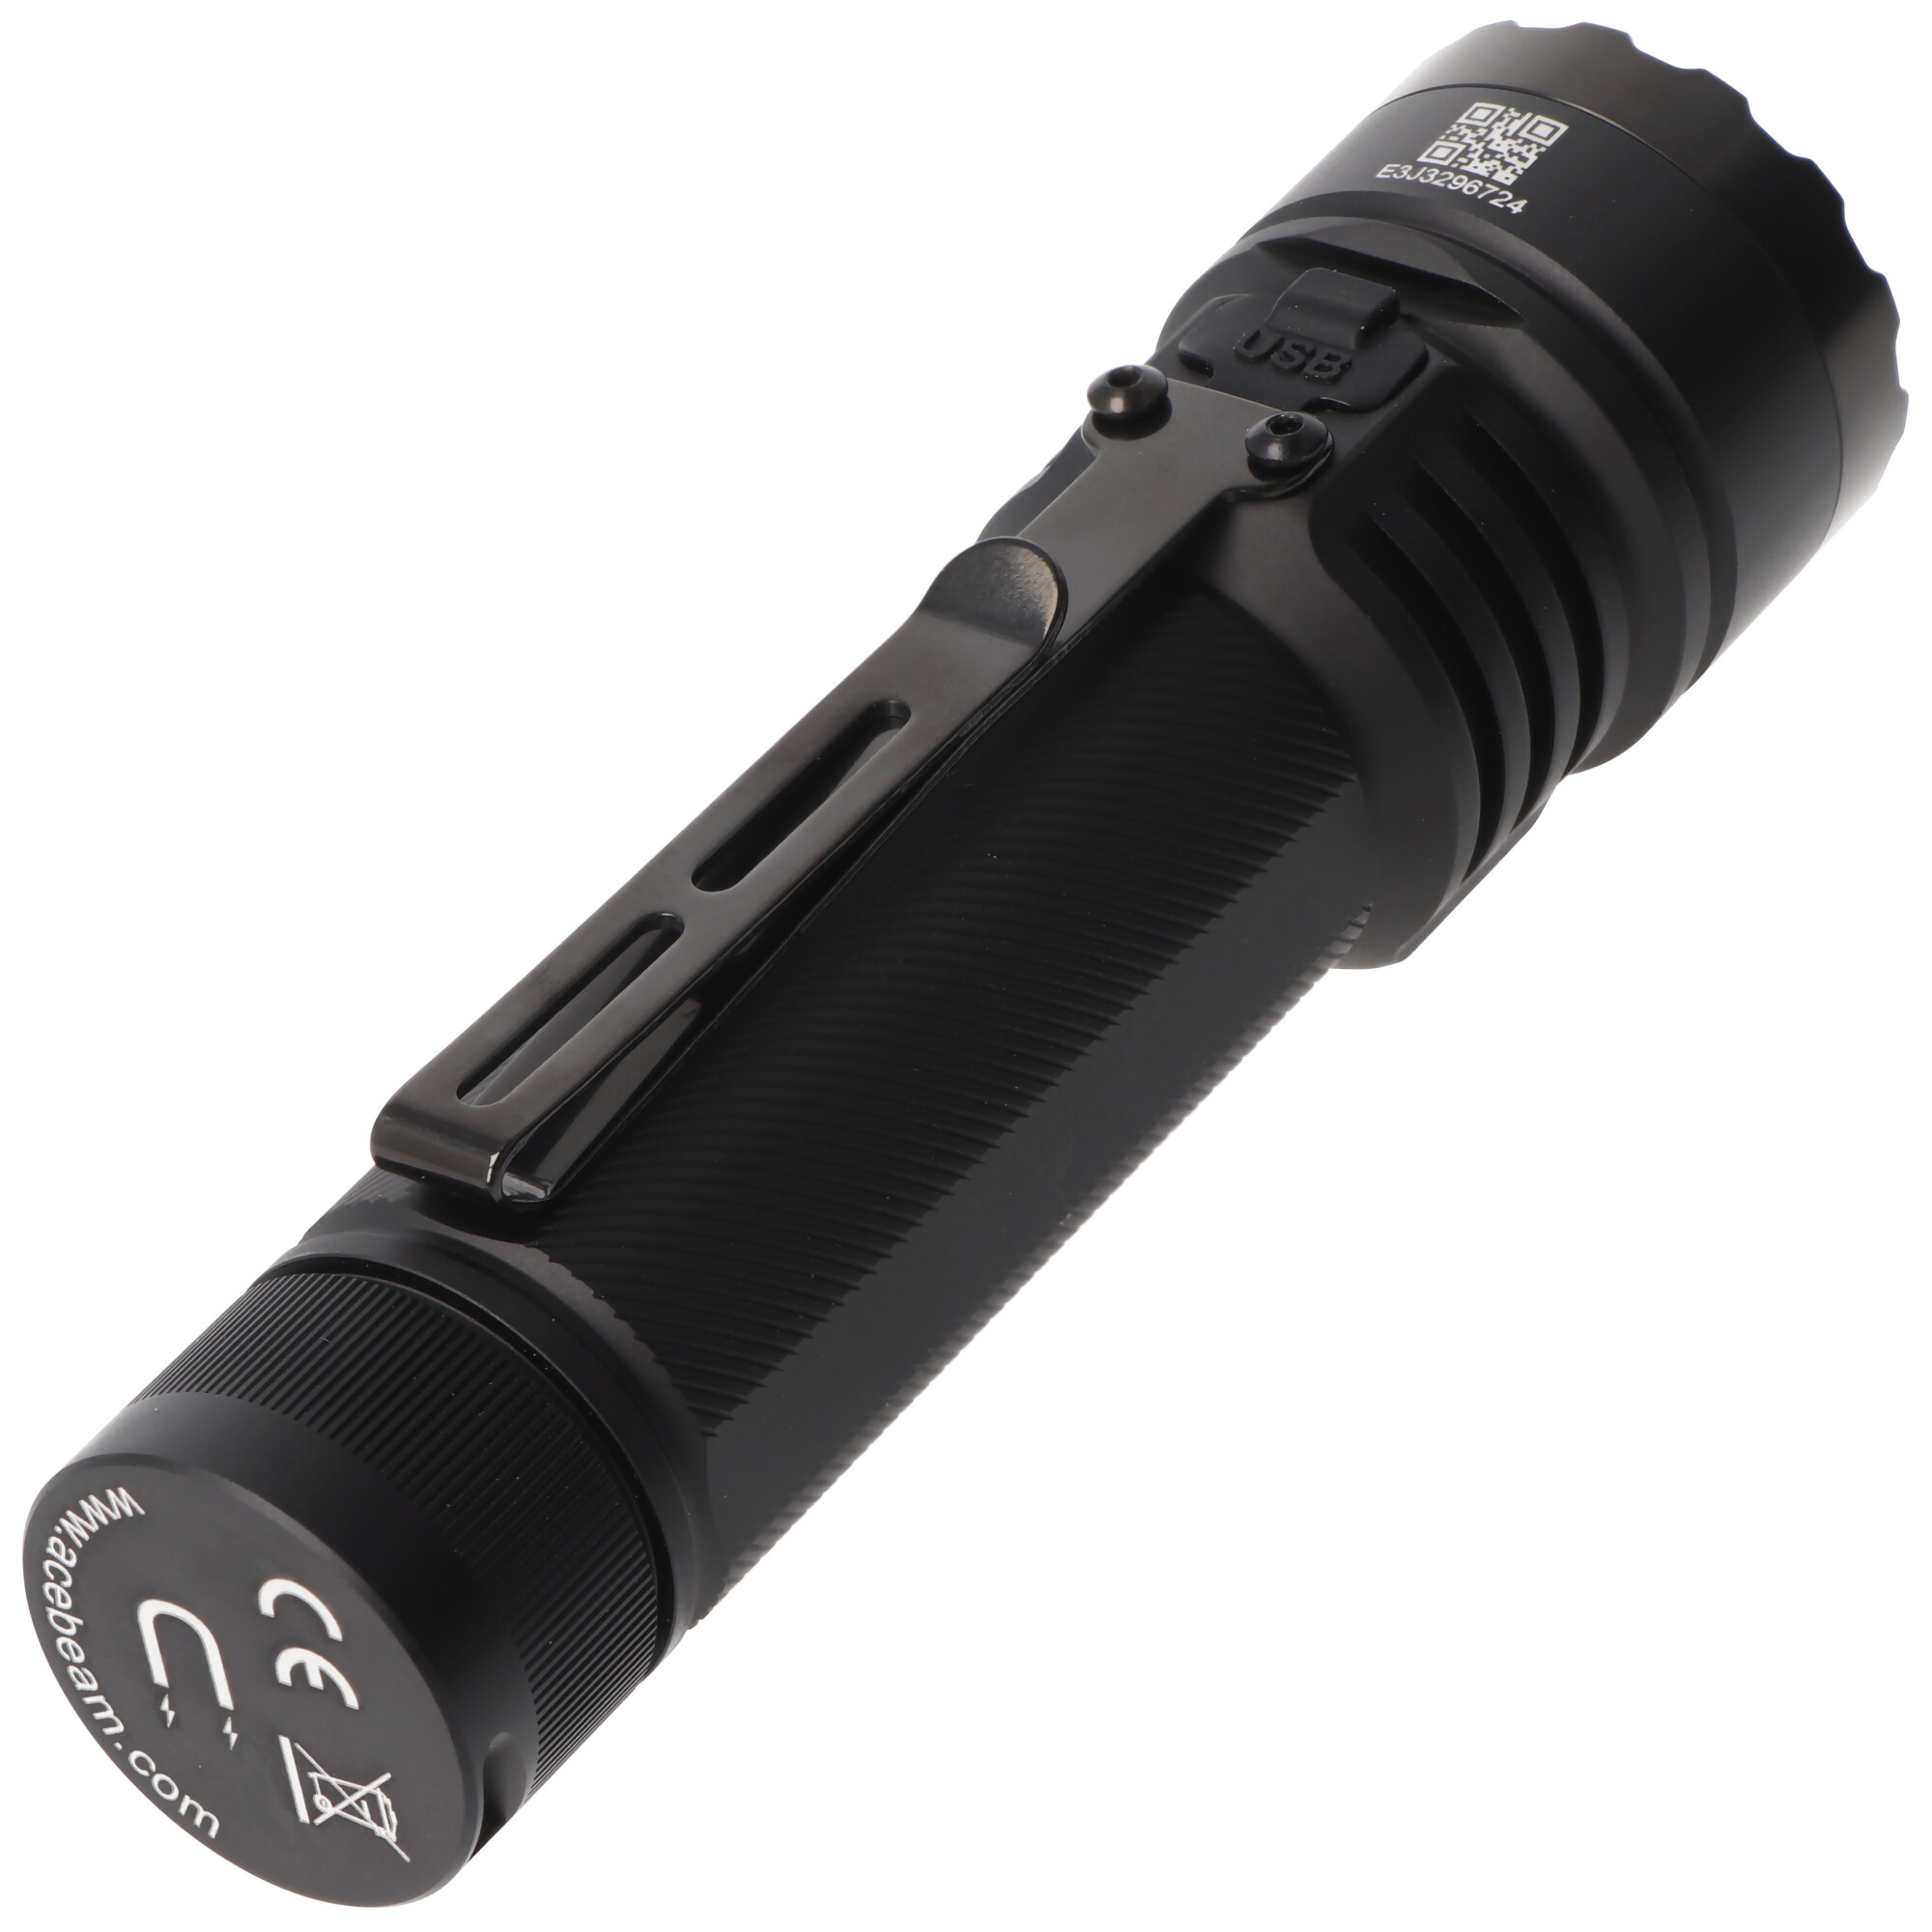 AceBeam E75 Quad Core LED Taschenlampe schwarz, 6.500K, bis zu 4500 Lumen Helligkeit, inklusive 21700 5000mAh Li-Ion Akku